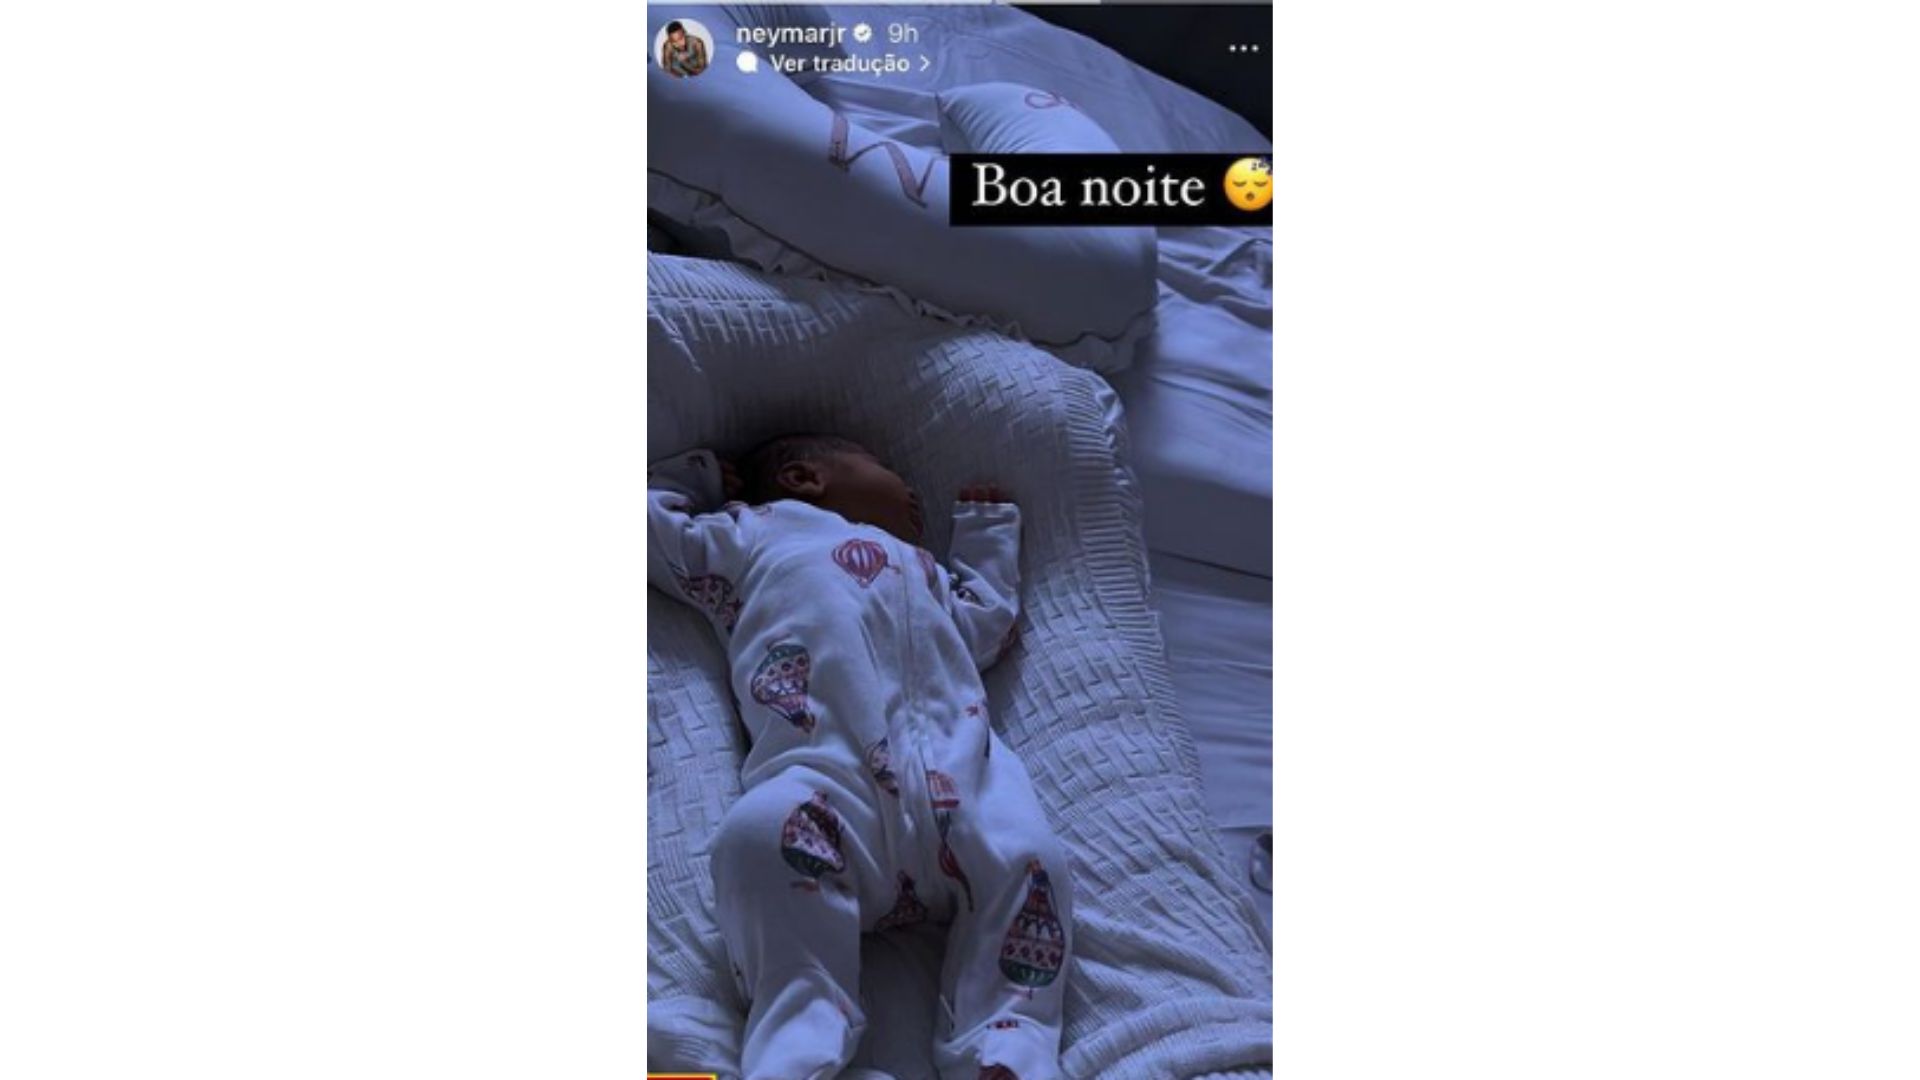 Storie de Neymar com foto de Mavie recém-nascida dormindo